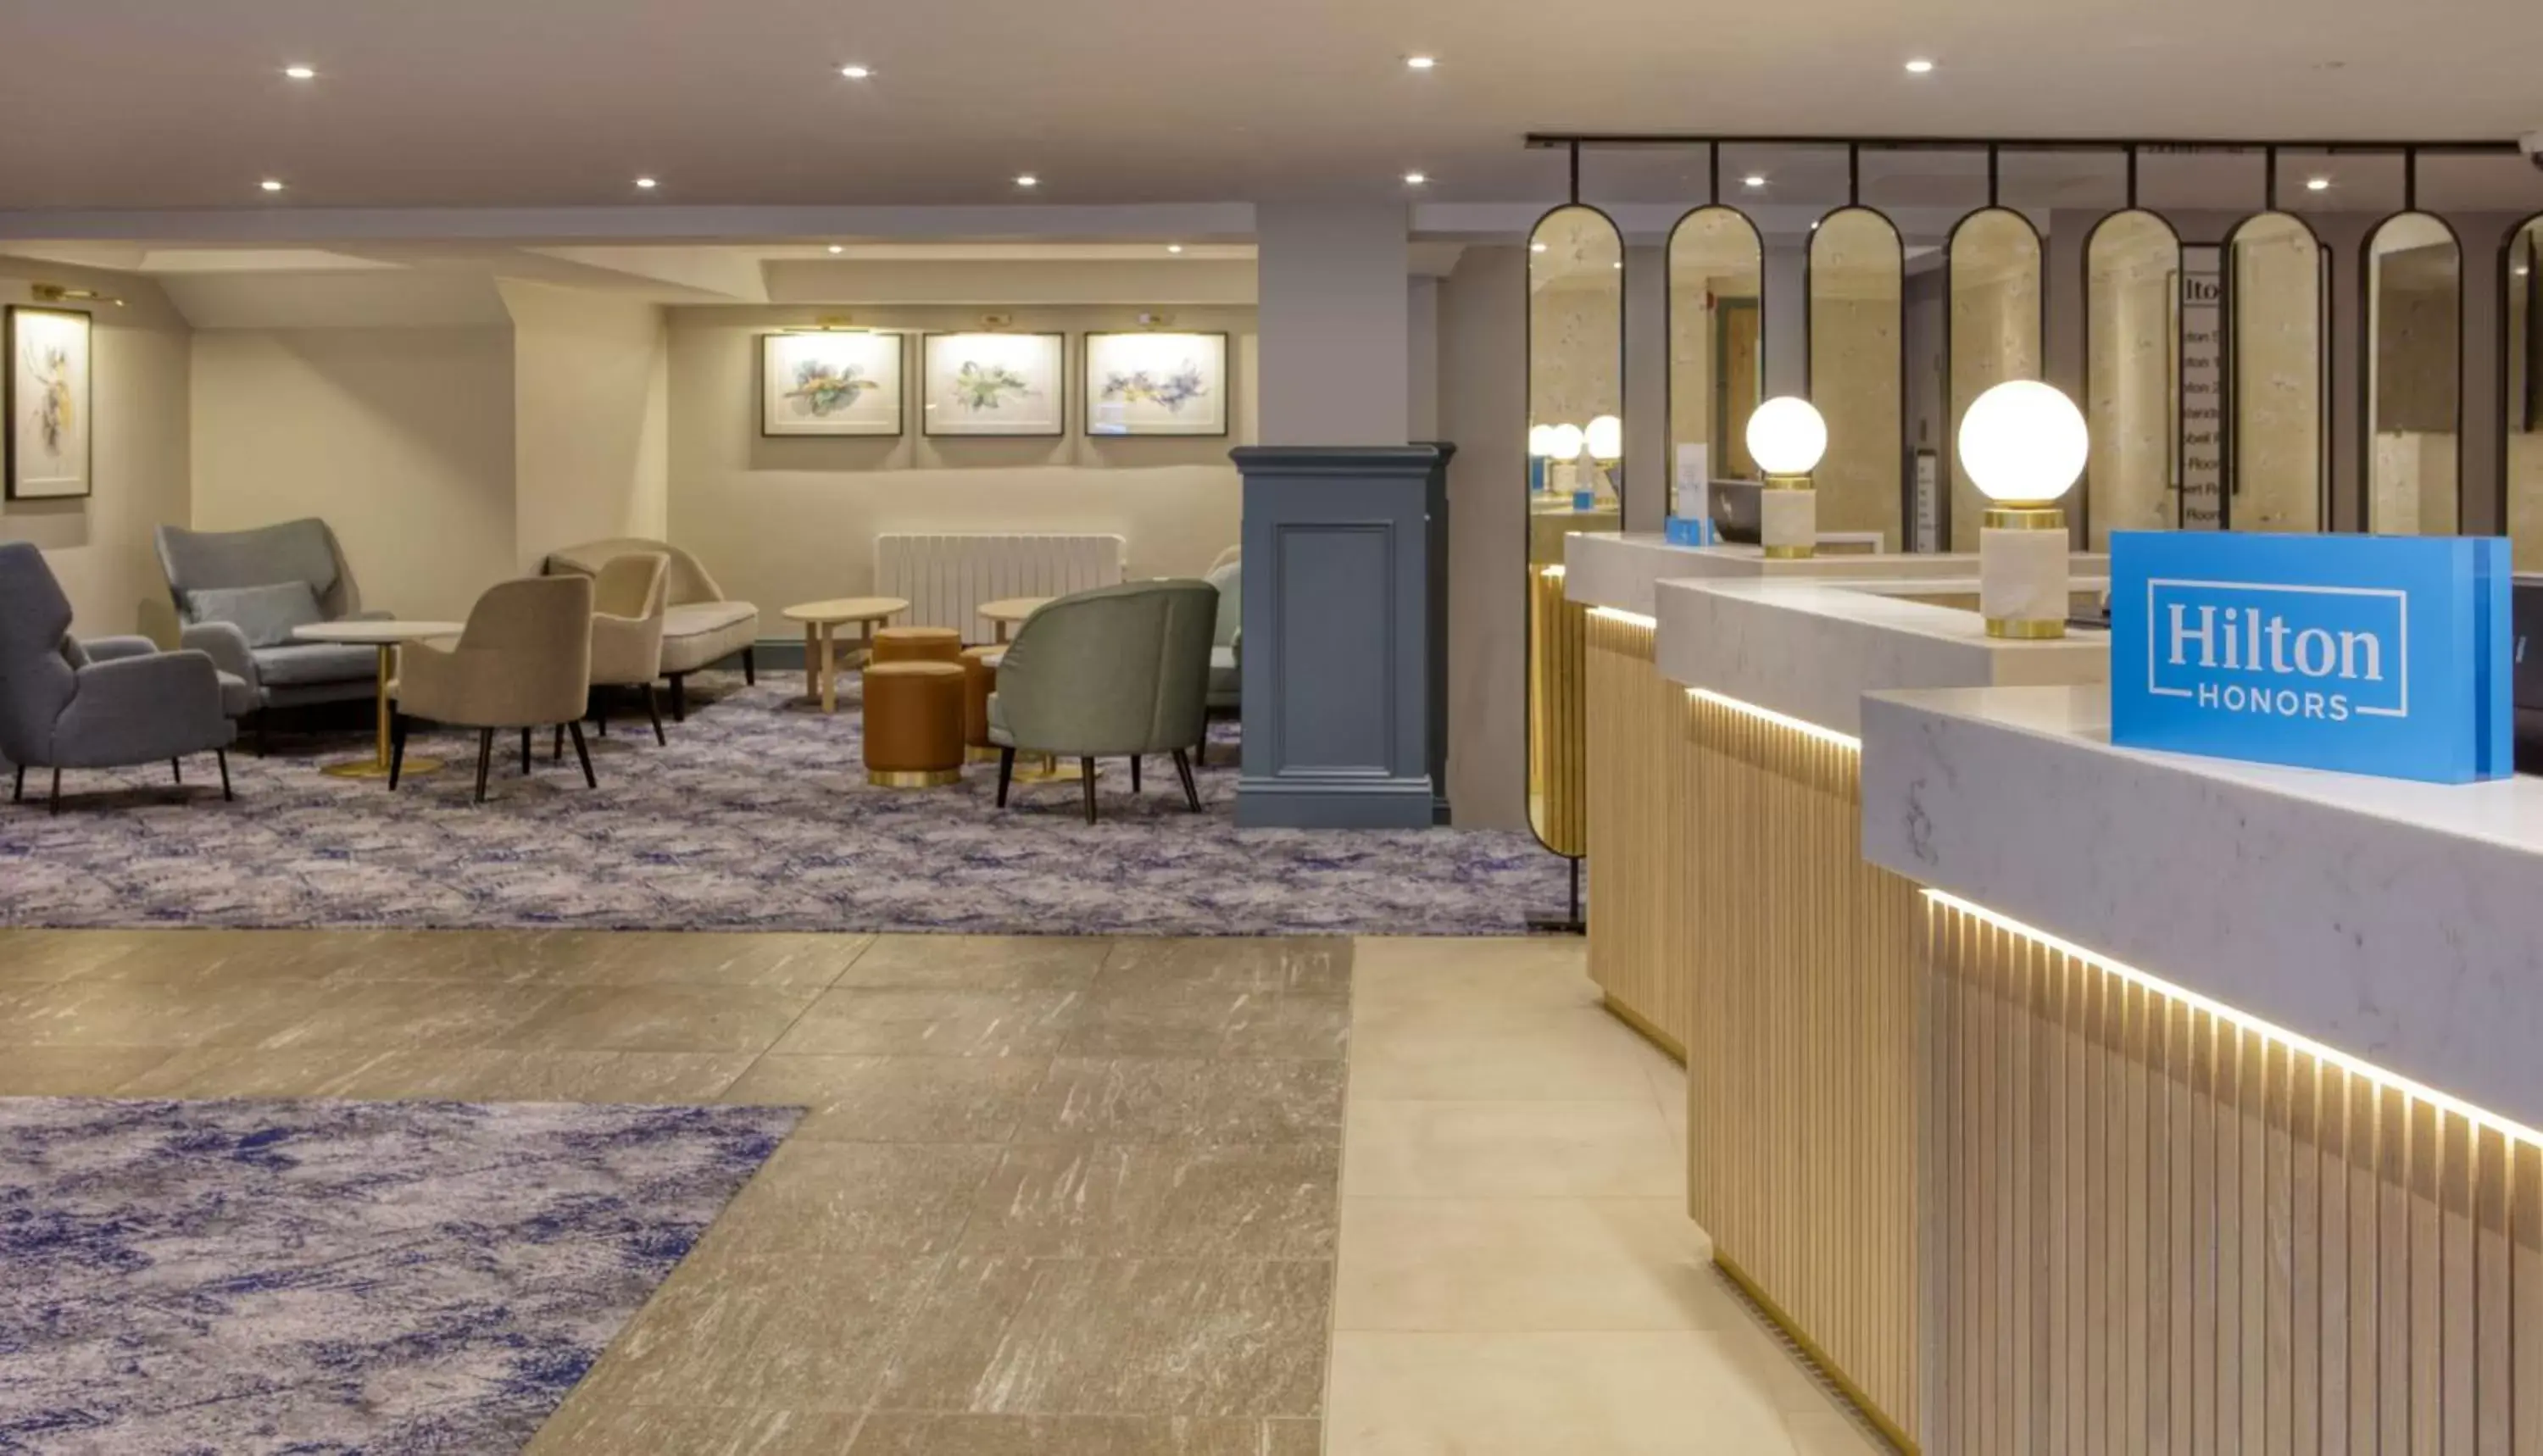 Lobby or reception, Lobby/Reception in Hilton Cobham